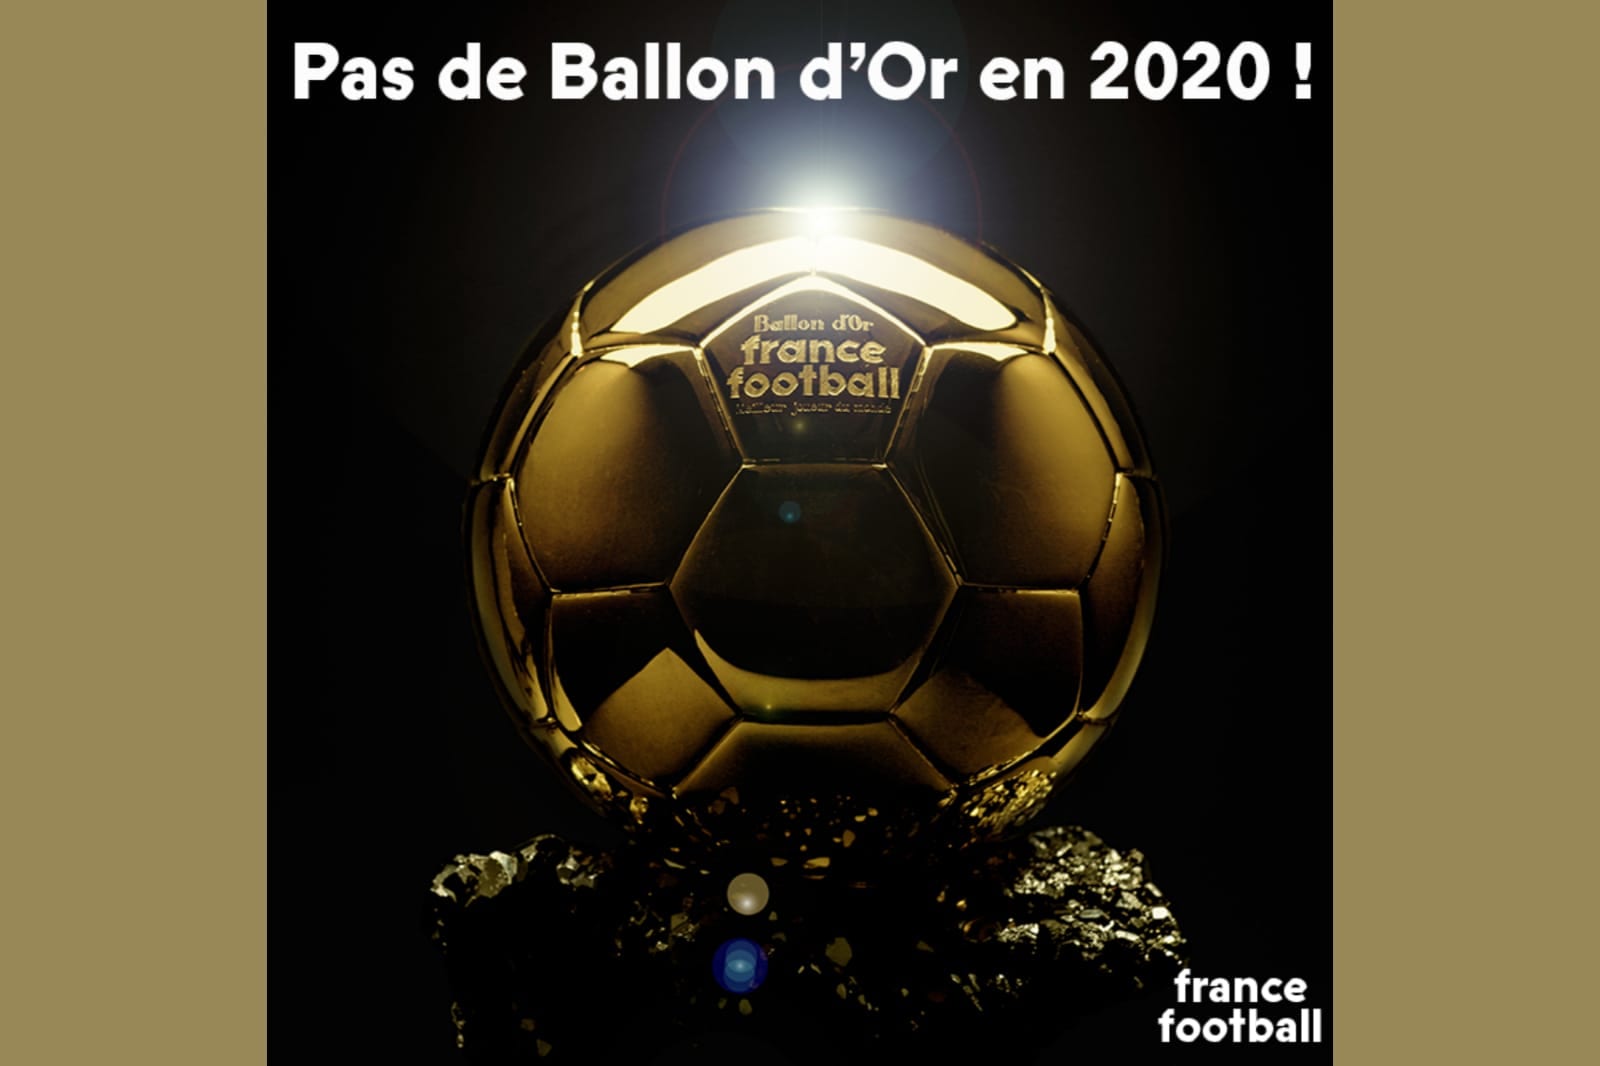 Pas de Ballon D'or 2020 - La FIFA déclare